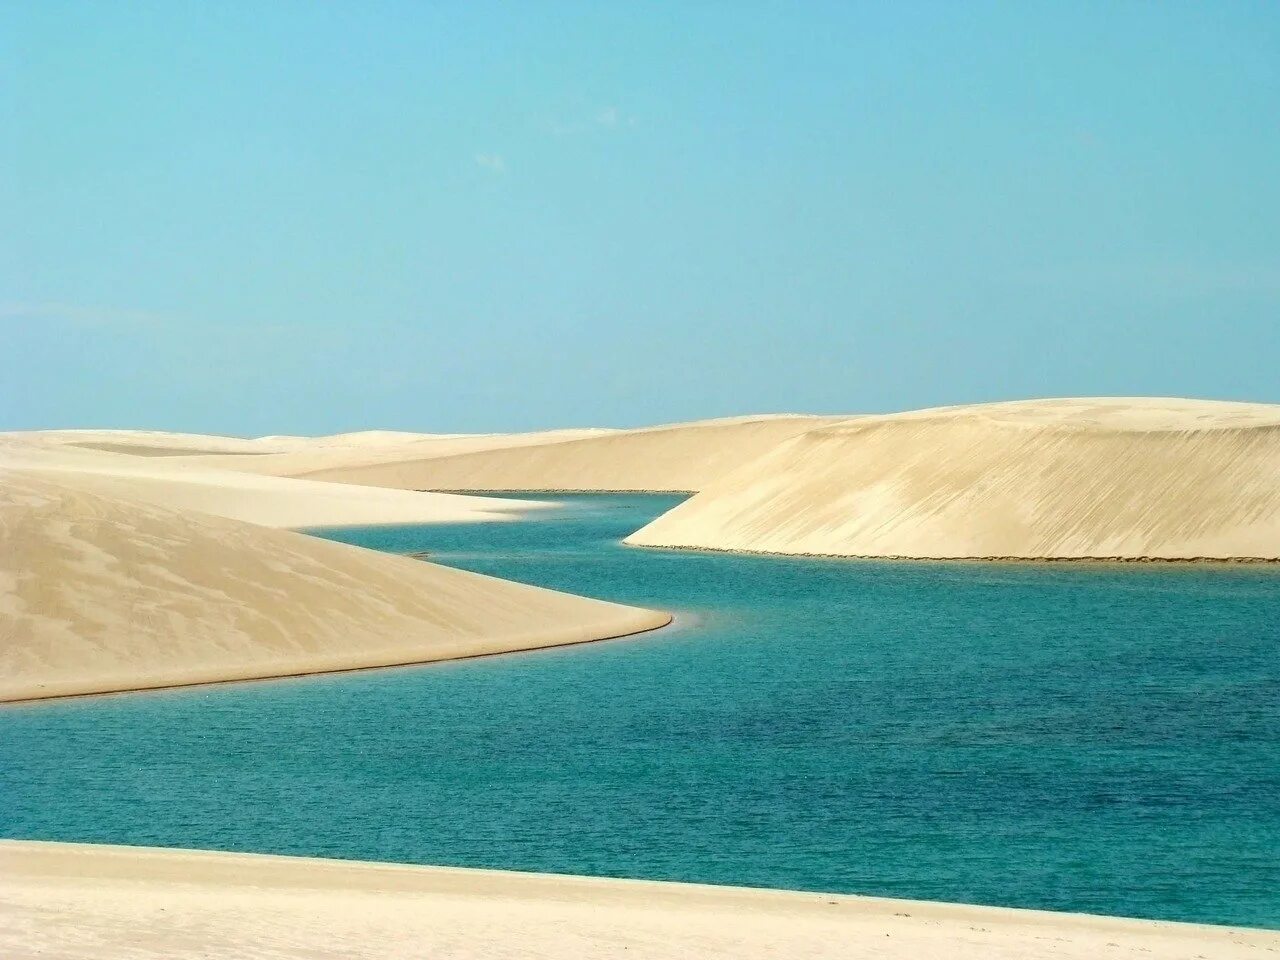 Озеро Ленсойс Мараньенсес. Парк Ленсойc-Мараньенсес, Бразилия. Оазисы Саудовской Аравии. Оазис Аравийской пустыни. Реки саудовской аравии